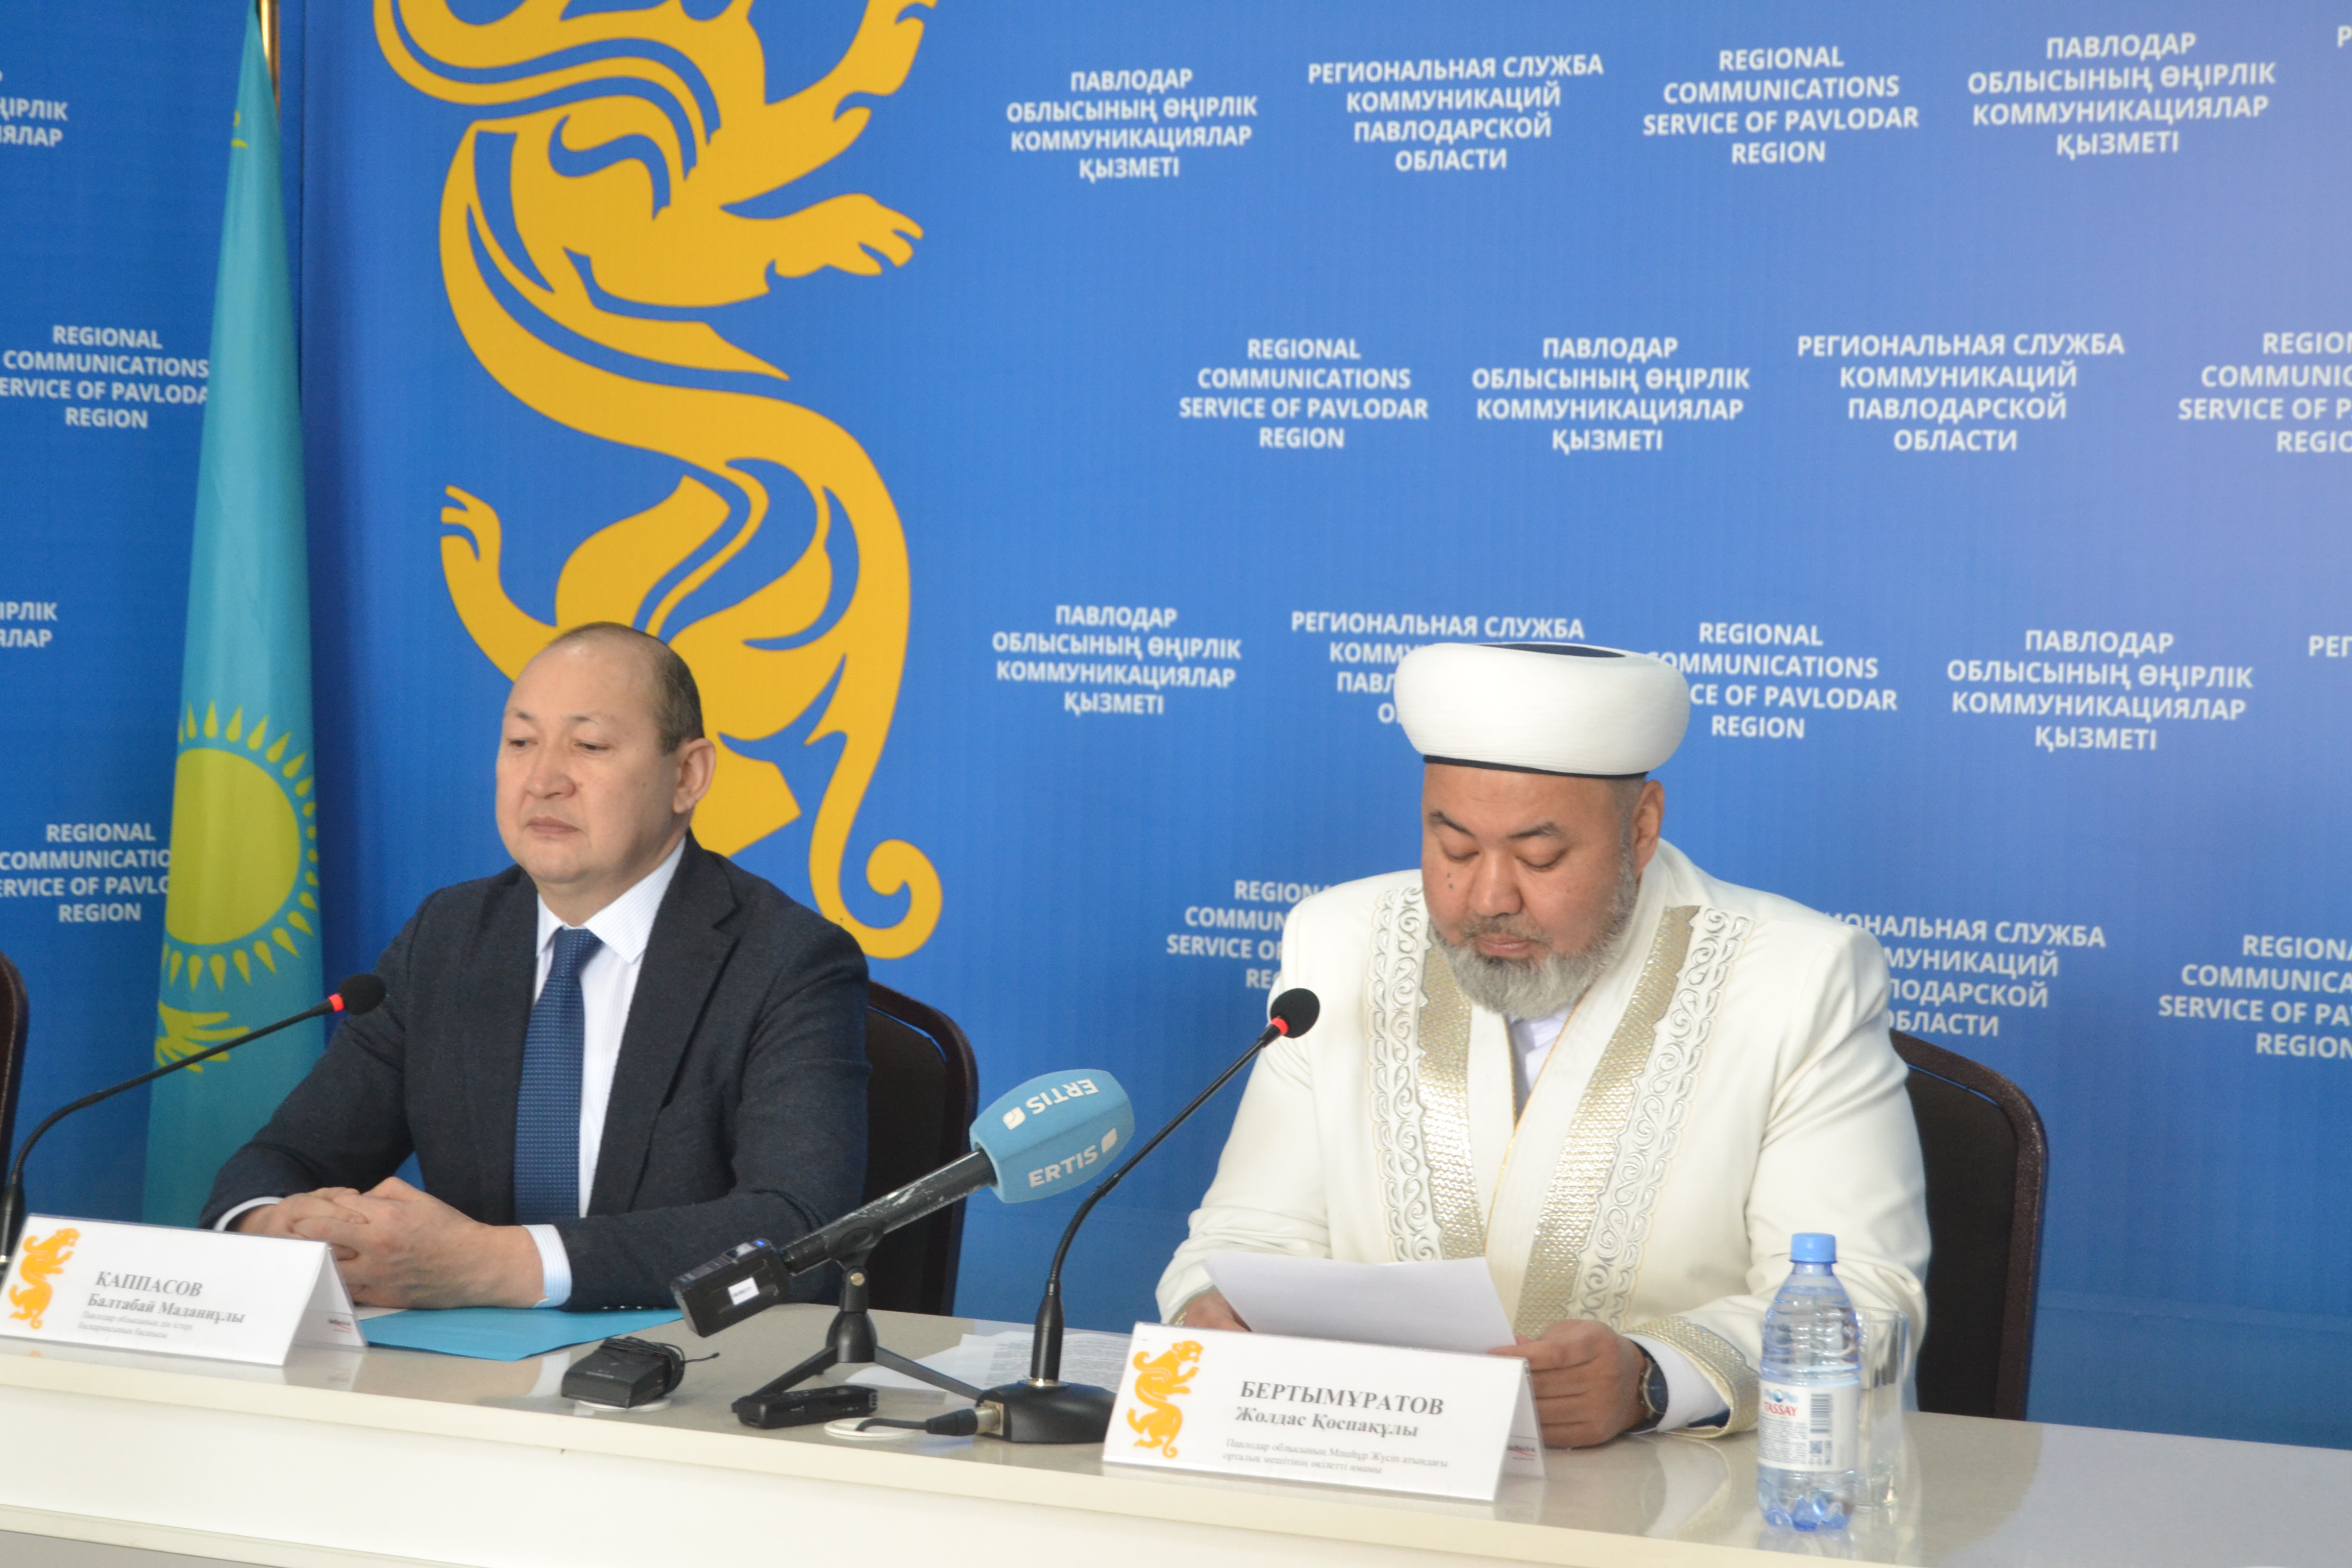 Сегодня в Региональной службе коммуникаций Павлодарской области прошел брифинг, посвященный священному месяцу Рамазан.